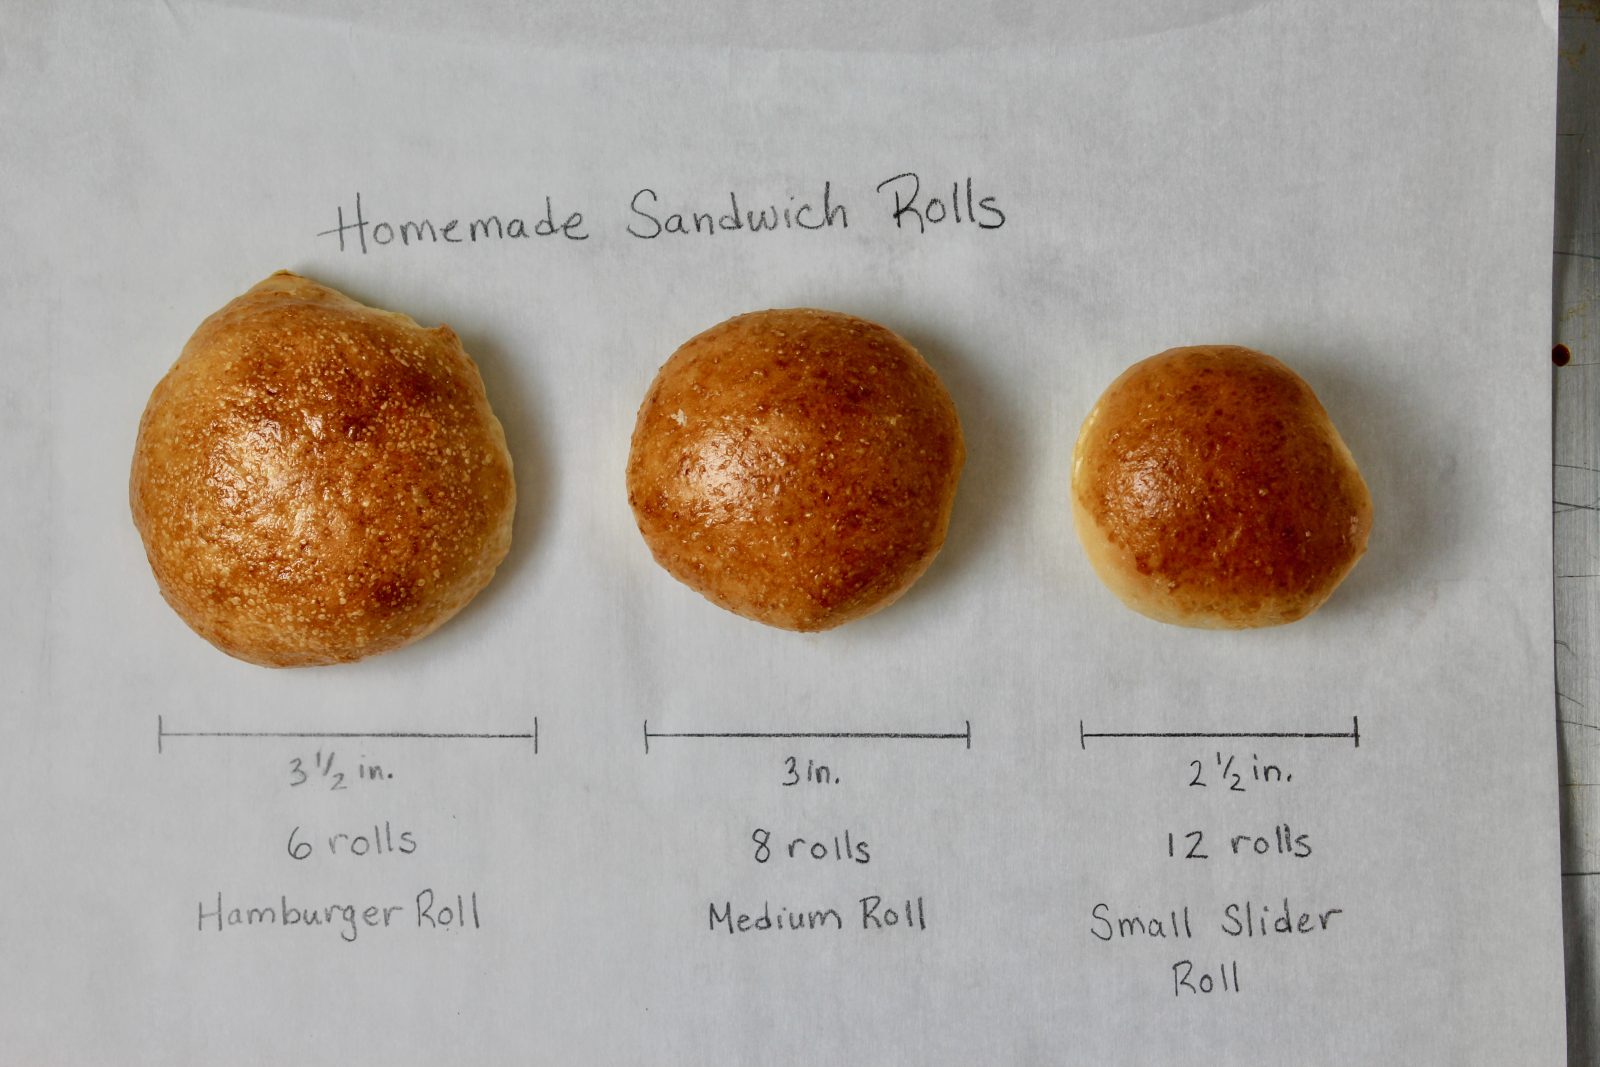 https://www.epicuricloud.com/wp-content/uploads/2020/07/Homemade-Sandwich-Rolls-Diagram2-1600x1067.jpeg